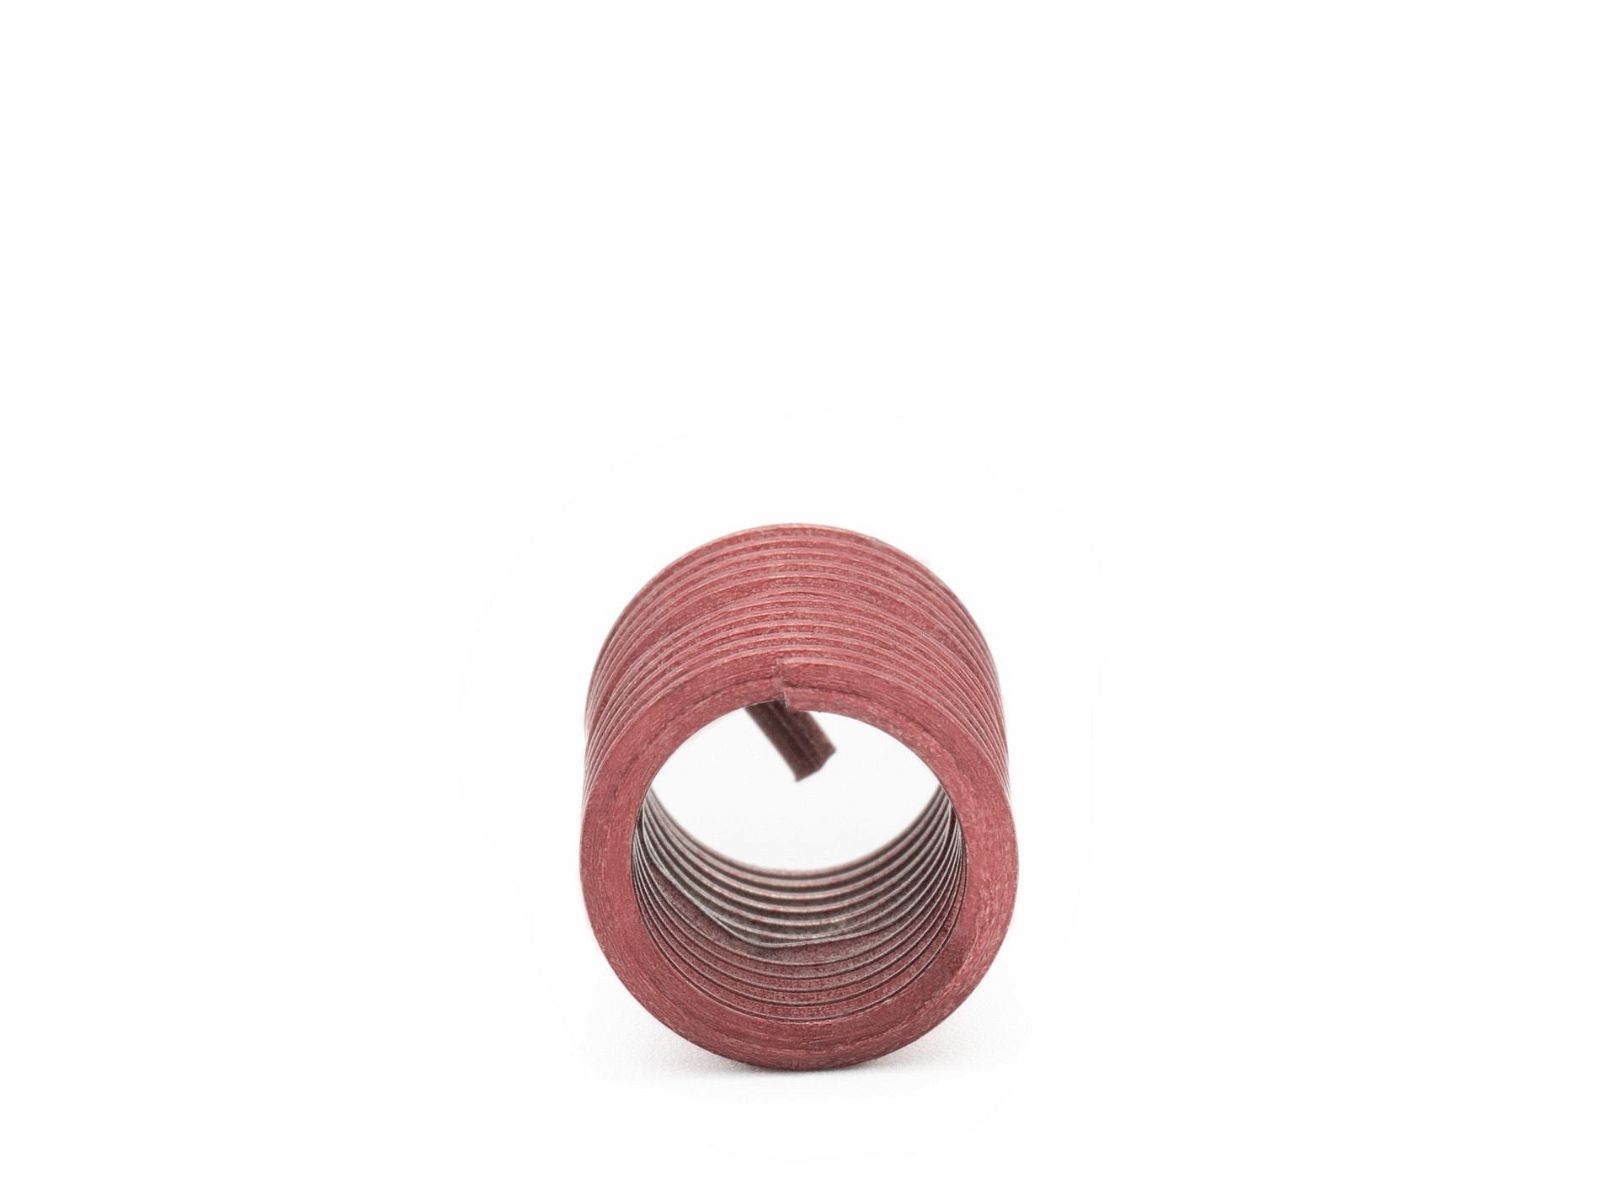 BaerCoil Wire Thread Inserts M 10 x 1.25 - 2.0 D (20 mm) - screw grip (screw locking) - 10 pcs.